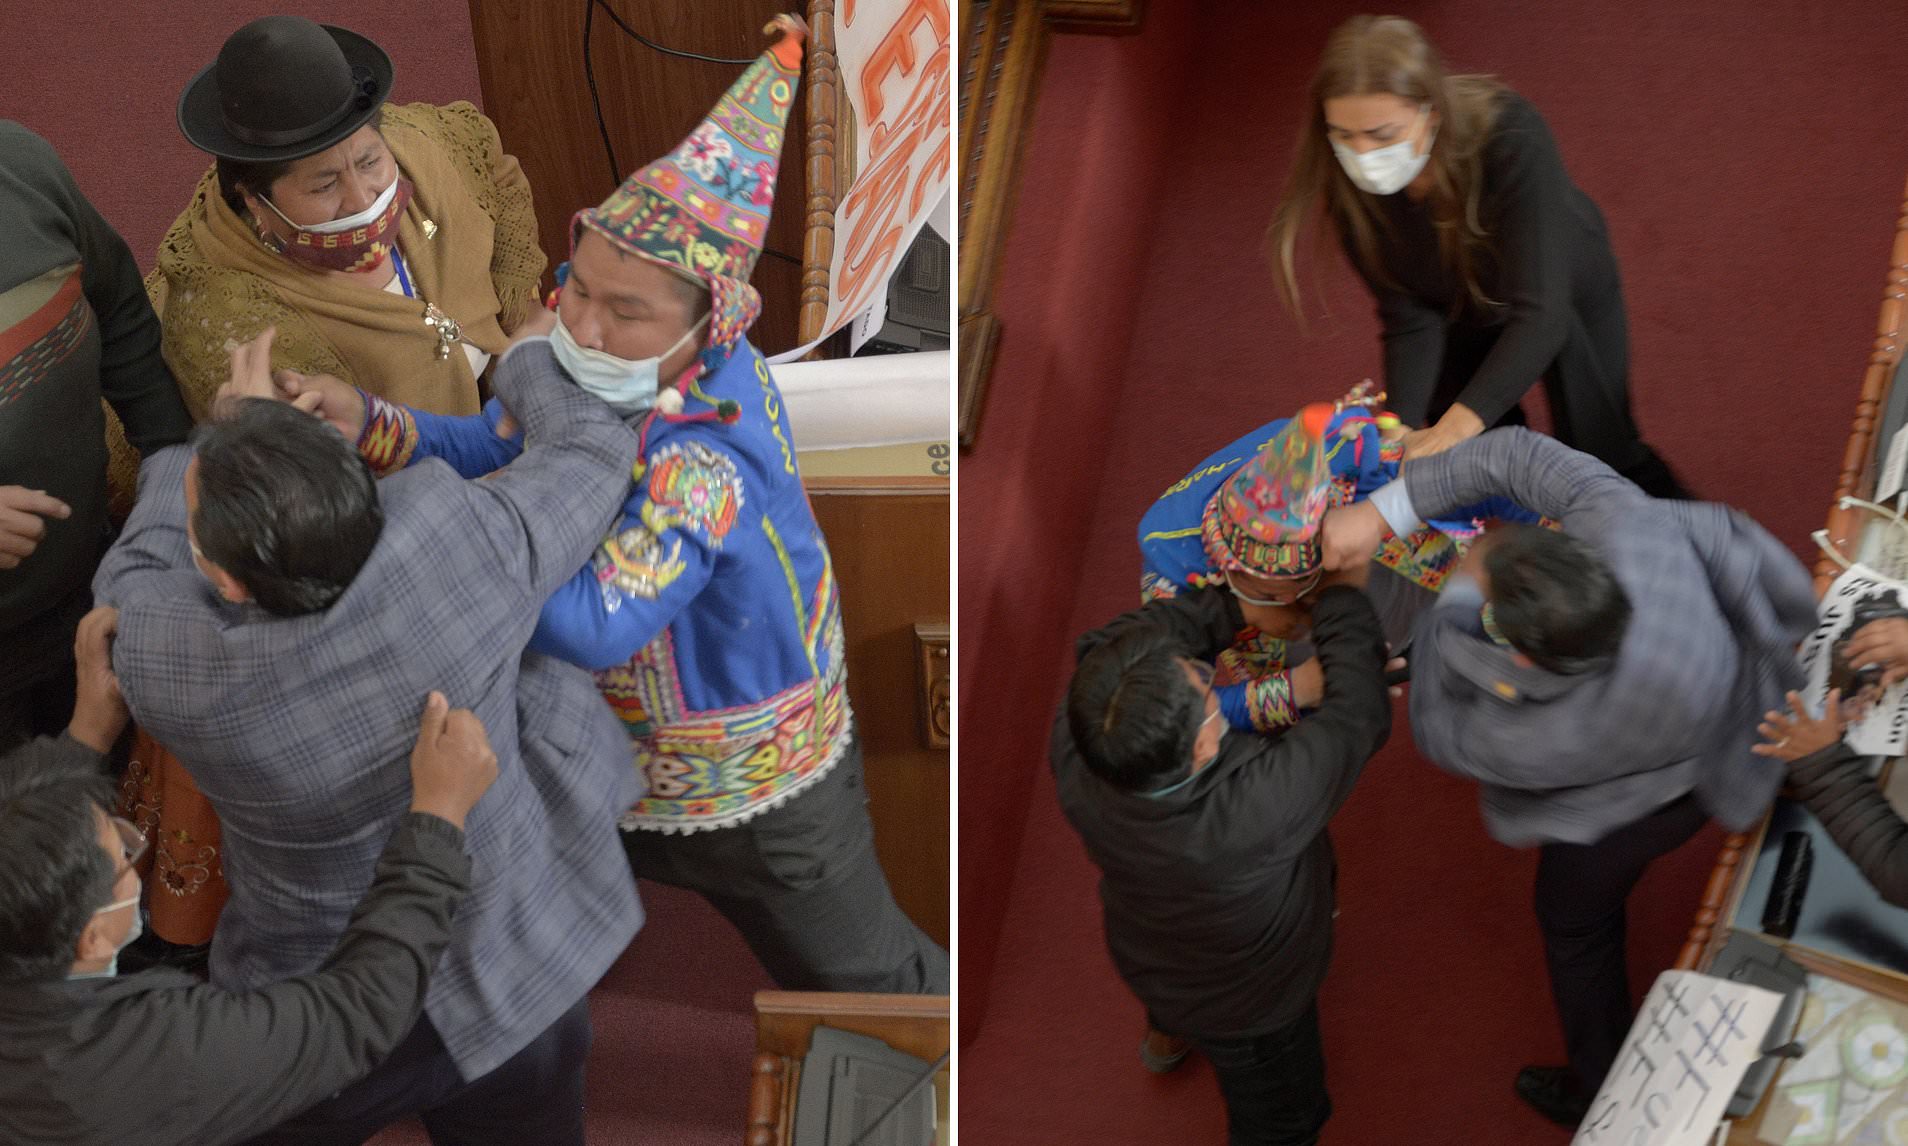 Έκαναν ρινγκ την Βουλή της Βολιβίας: Μπουνιές και μαλλιοτραβήγματα (βίντεο)